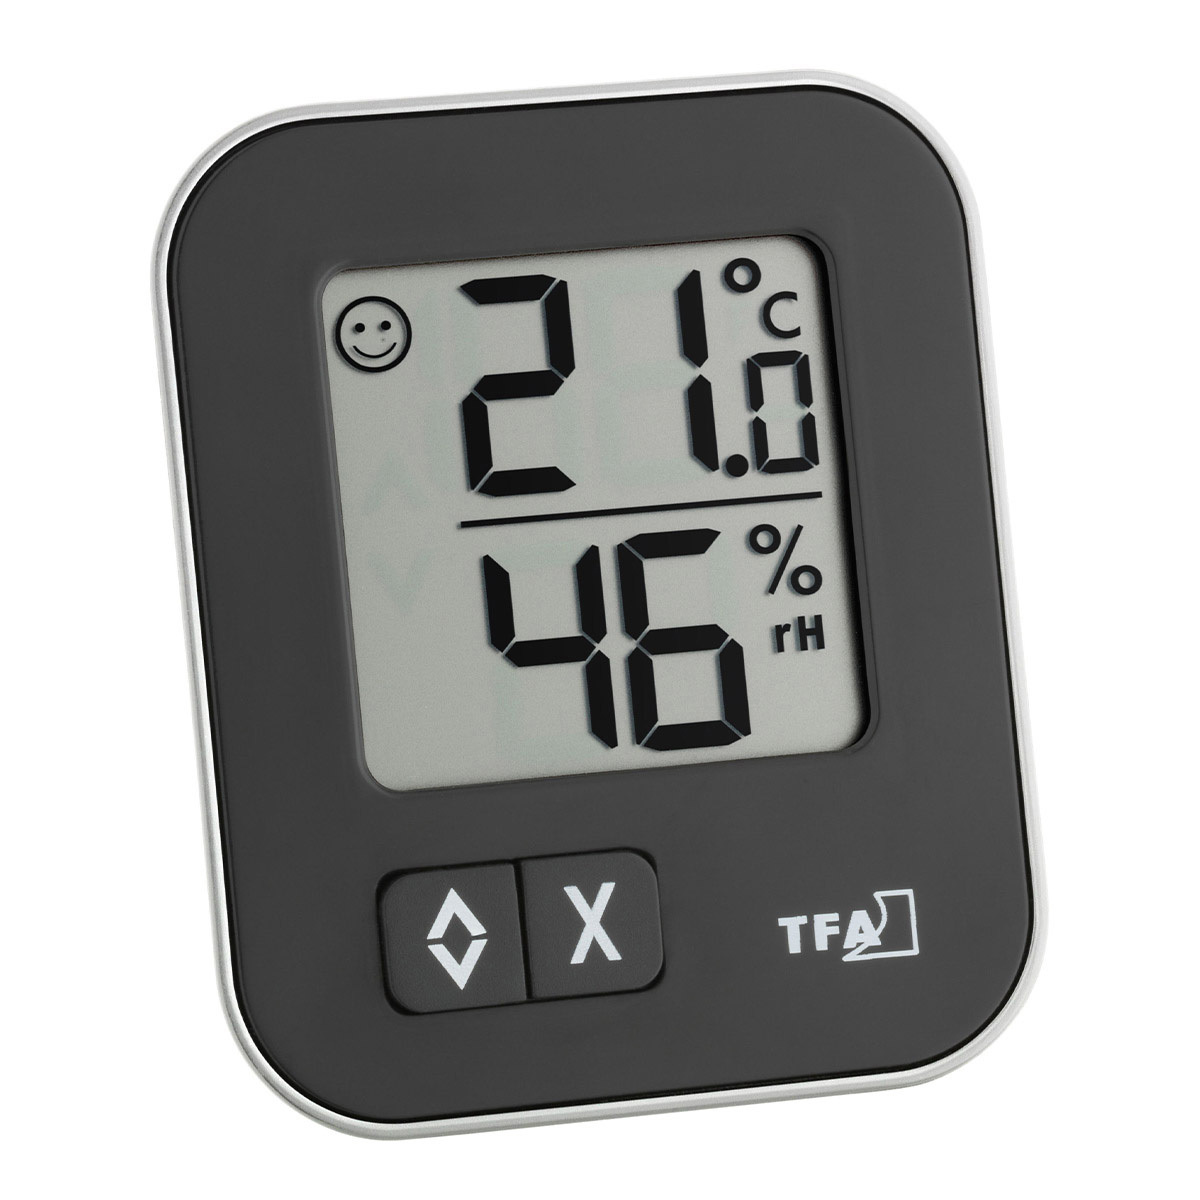 Luftfeuchtigkeits-/Temperaturmessgerät THERMO-HYGRO kaufen bei HENI